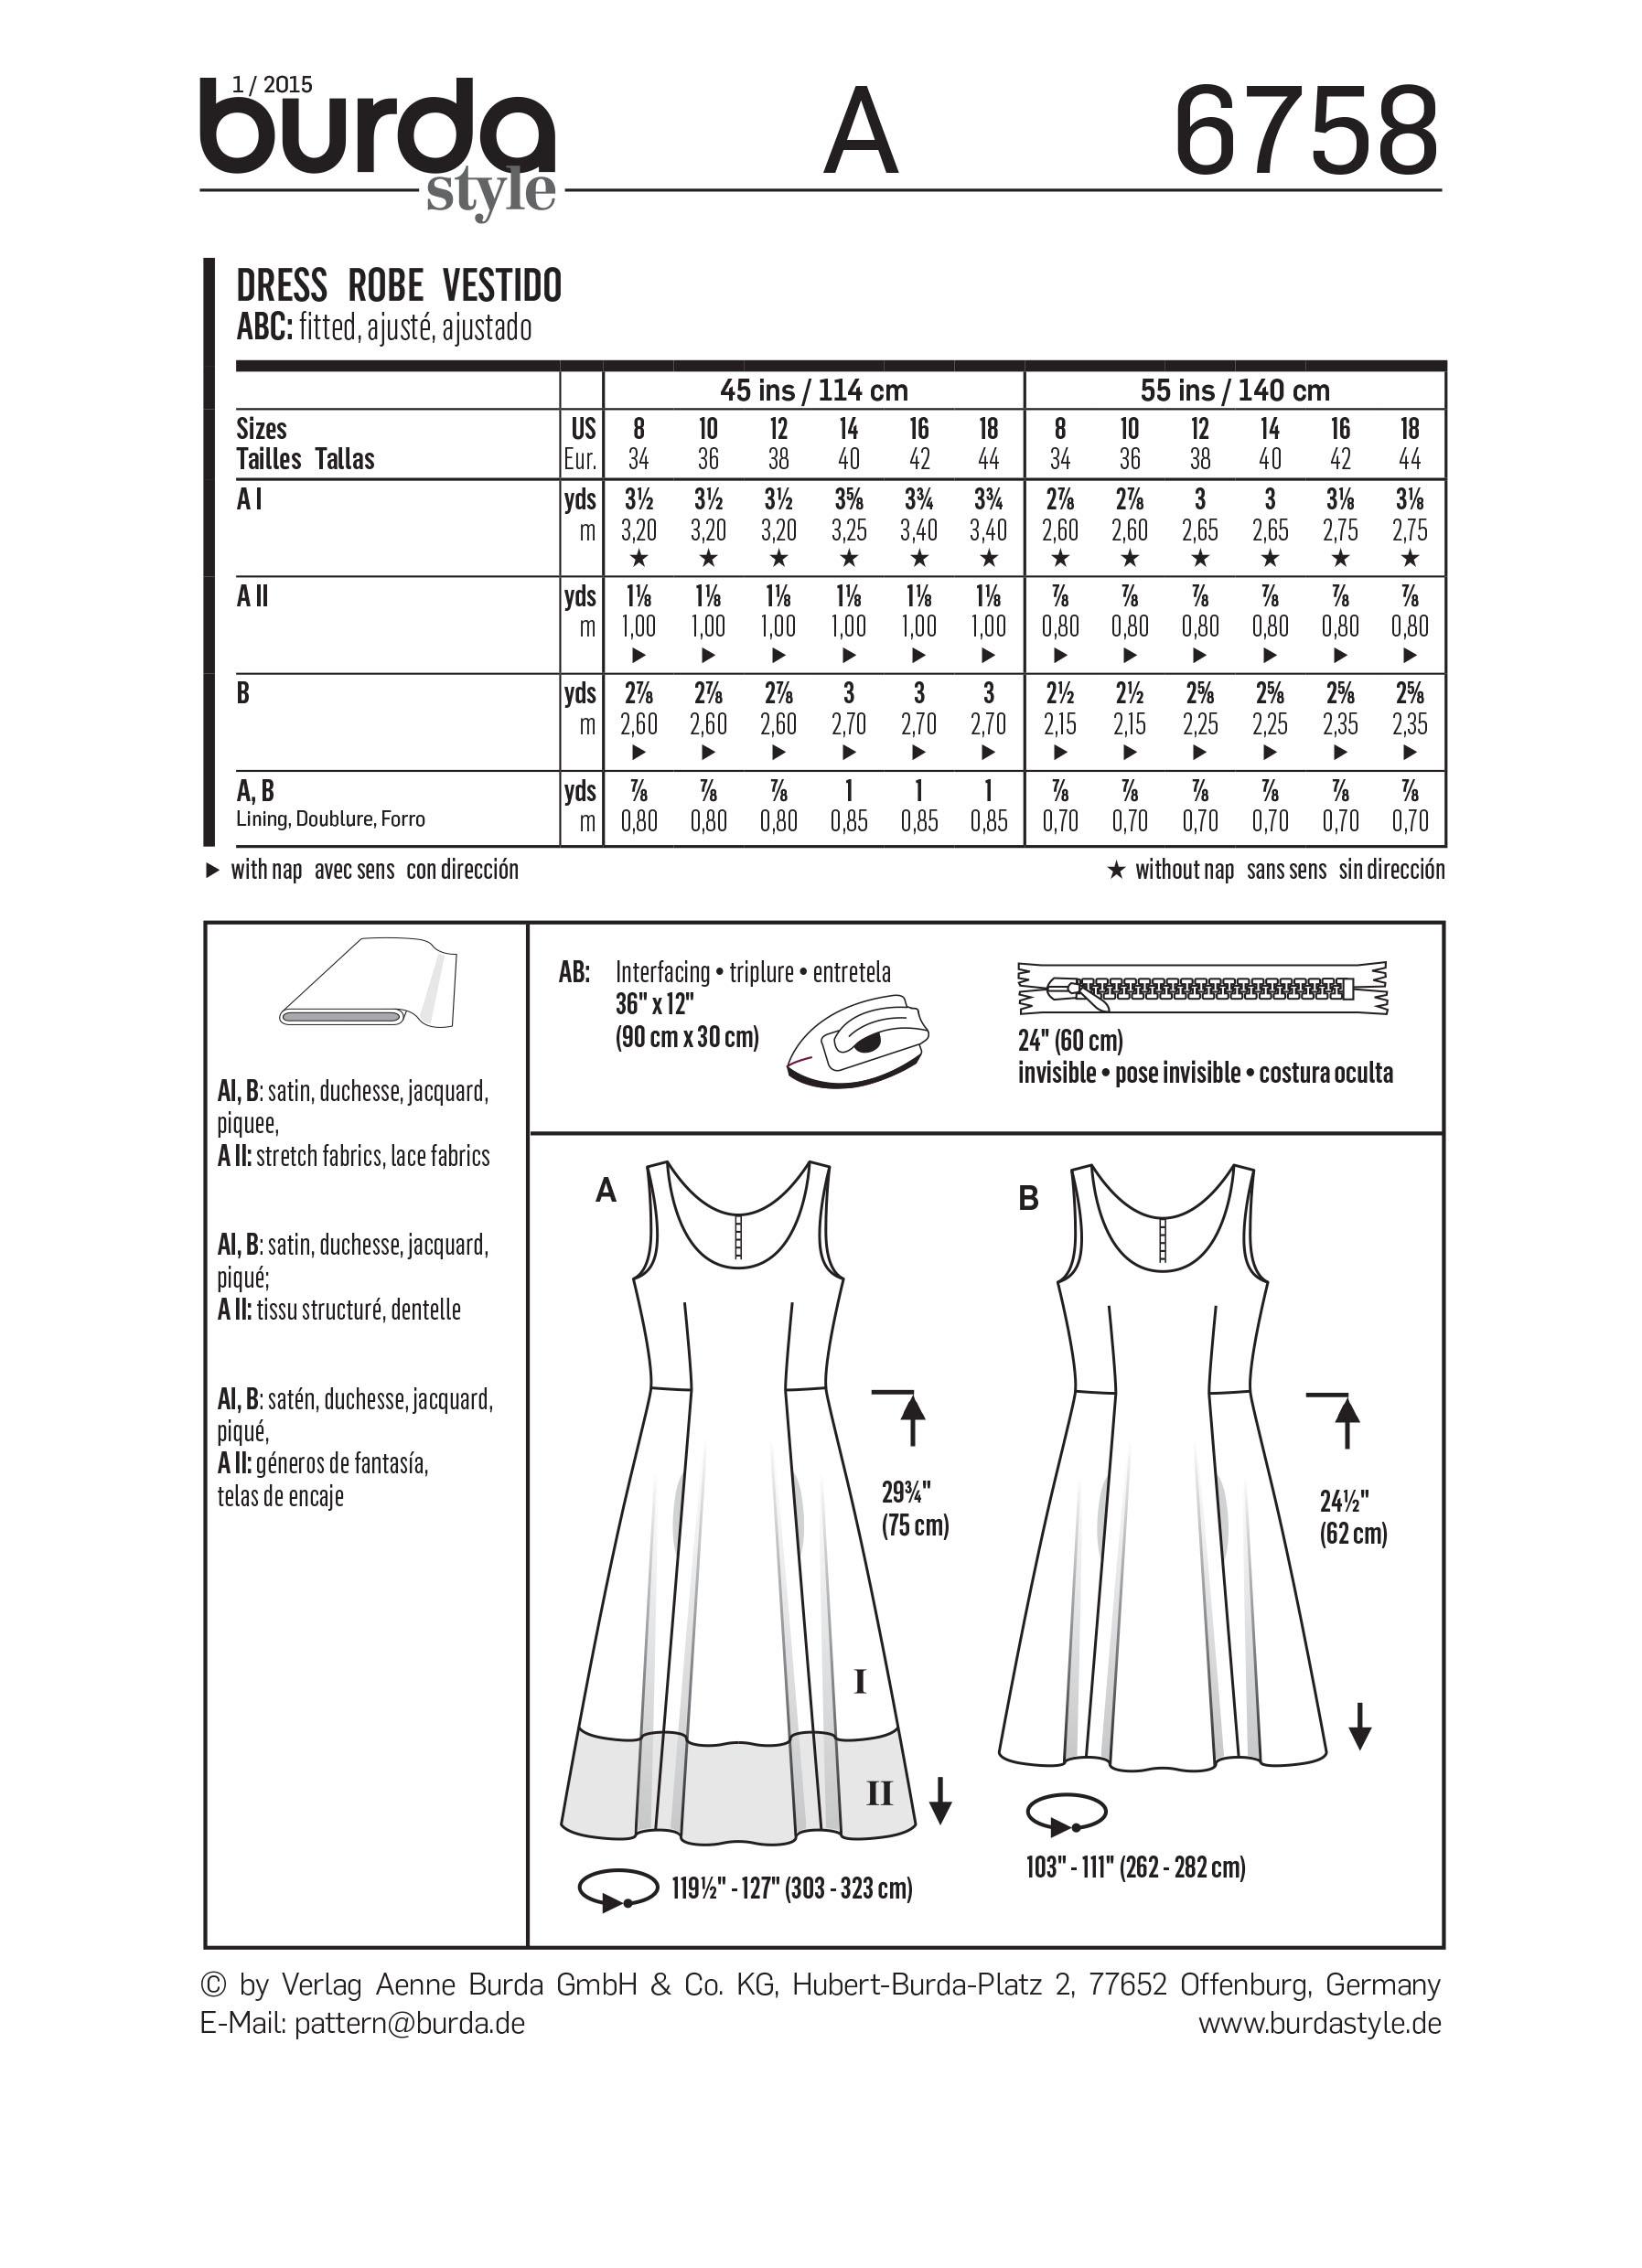 Burda B6758 Dresses Sewing Pattern